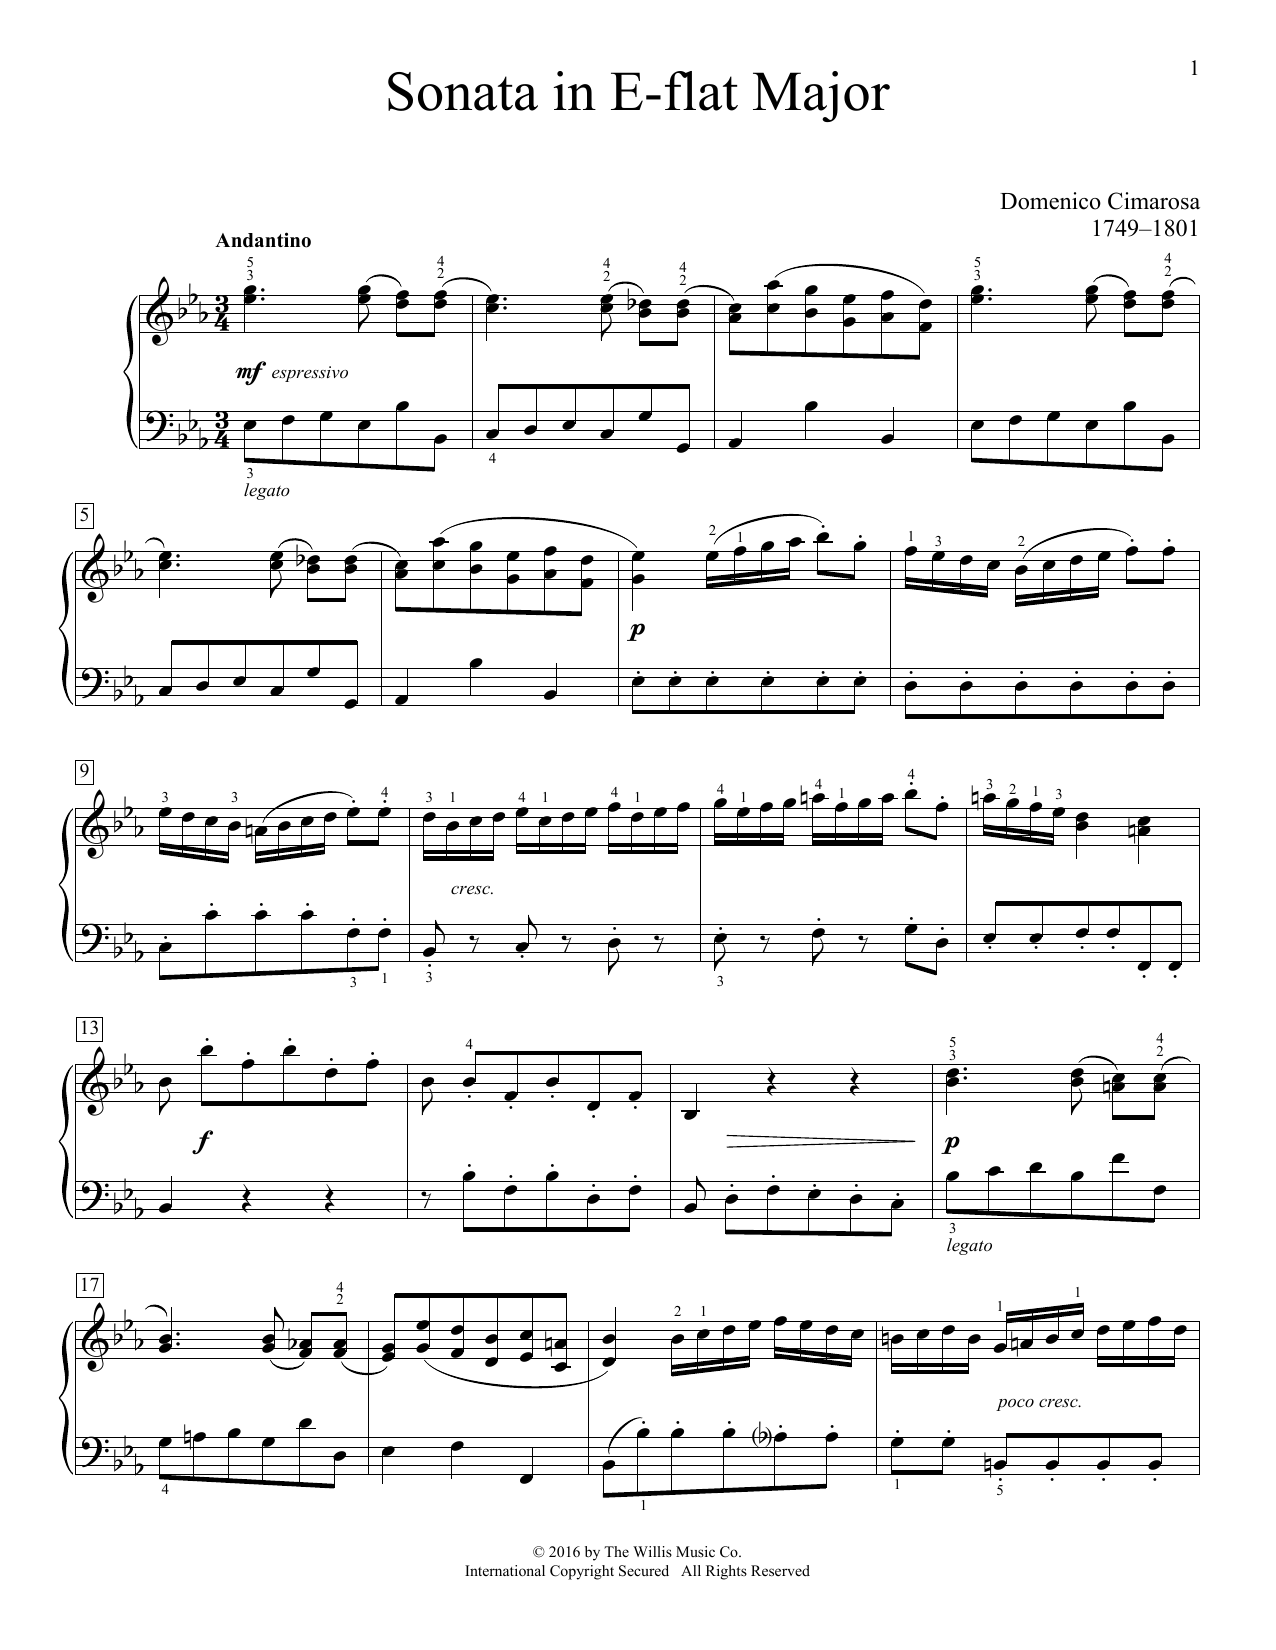 Download Domenico Cimarosa Sonata In E-Flat Major Sheet Music